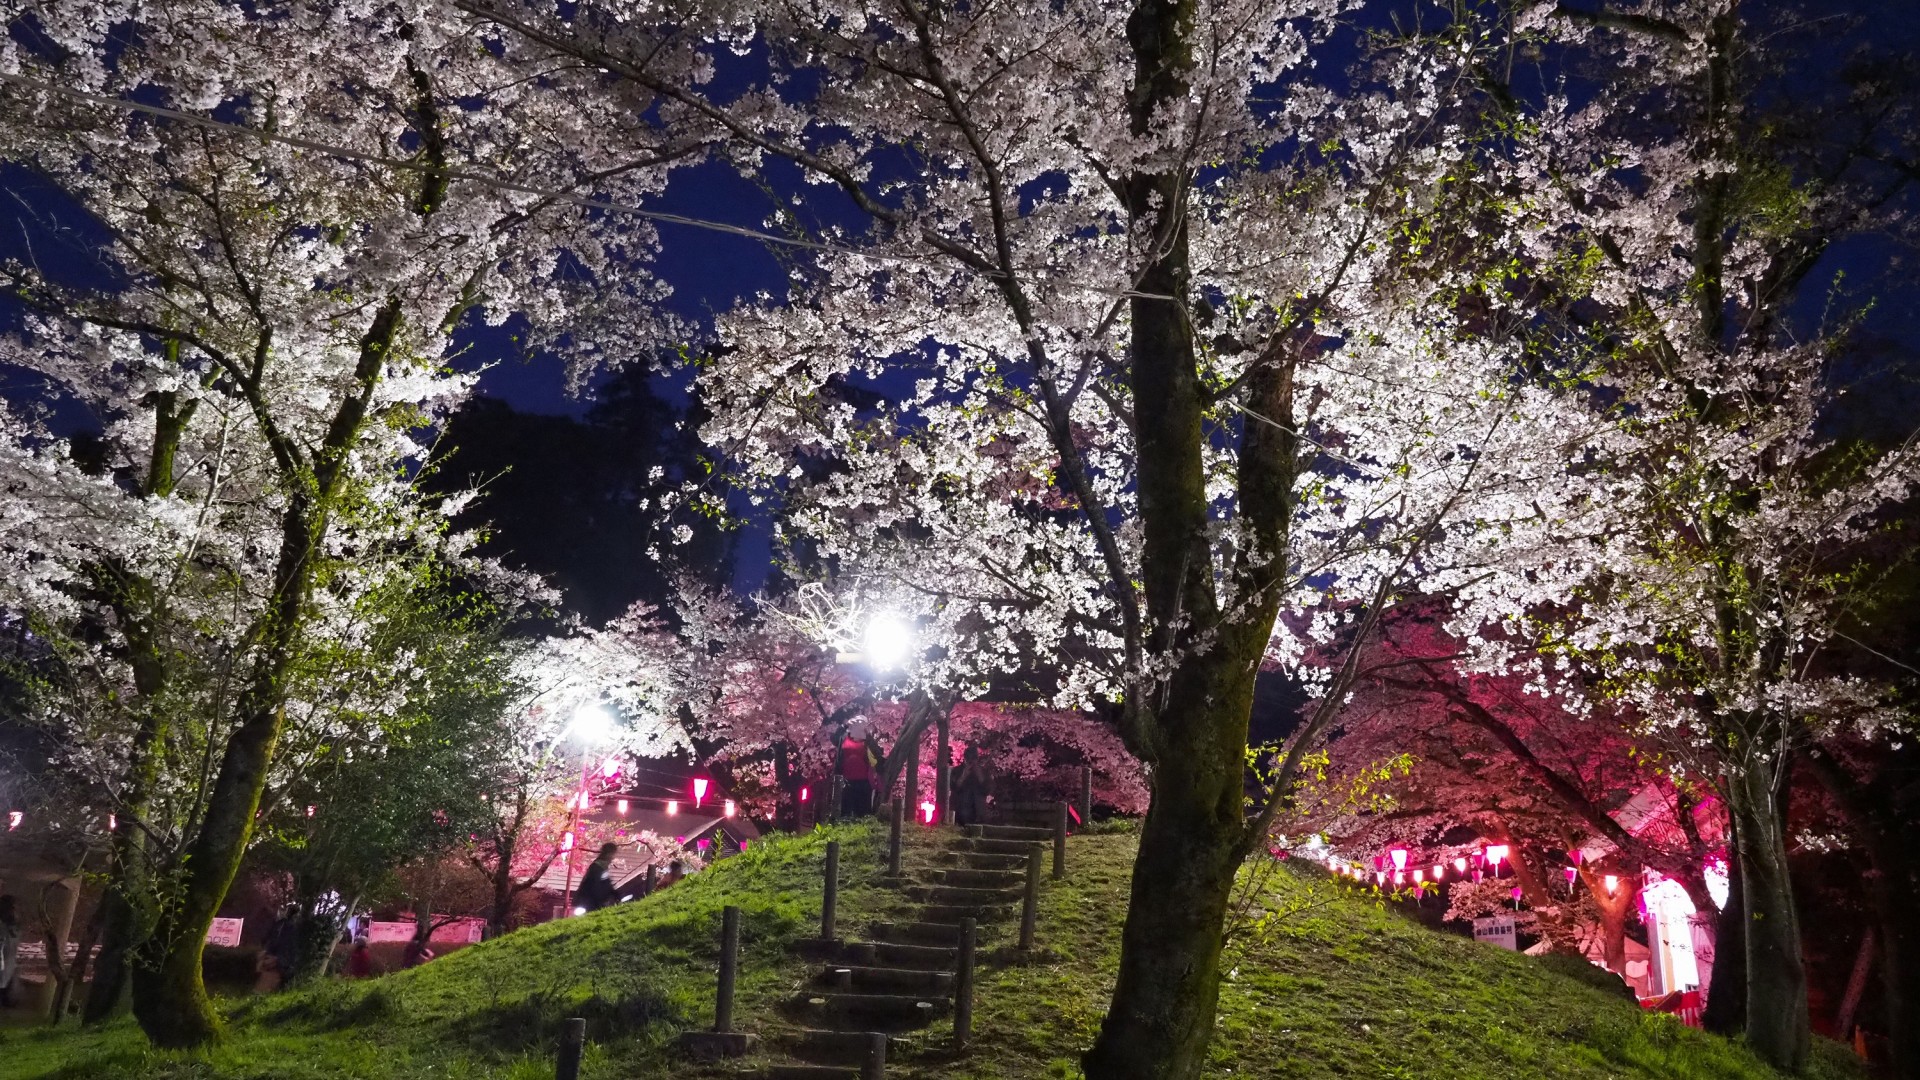 飯山白山森林公園 目的地 Tokyo Day Trip 東京から神奈川への日帰り旅行